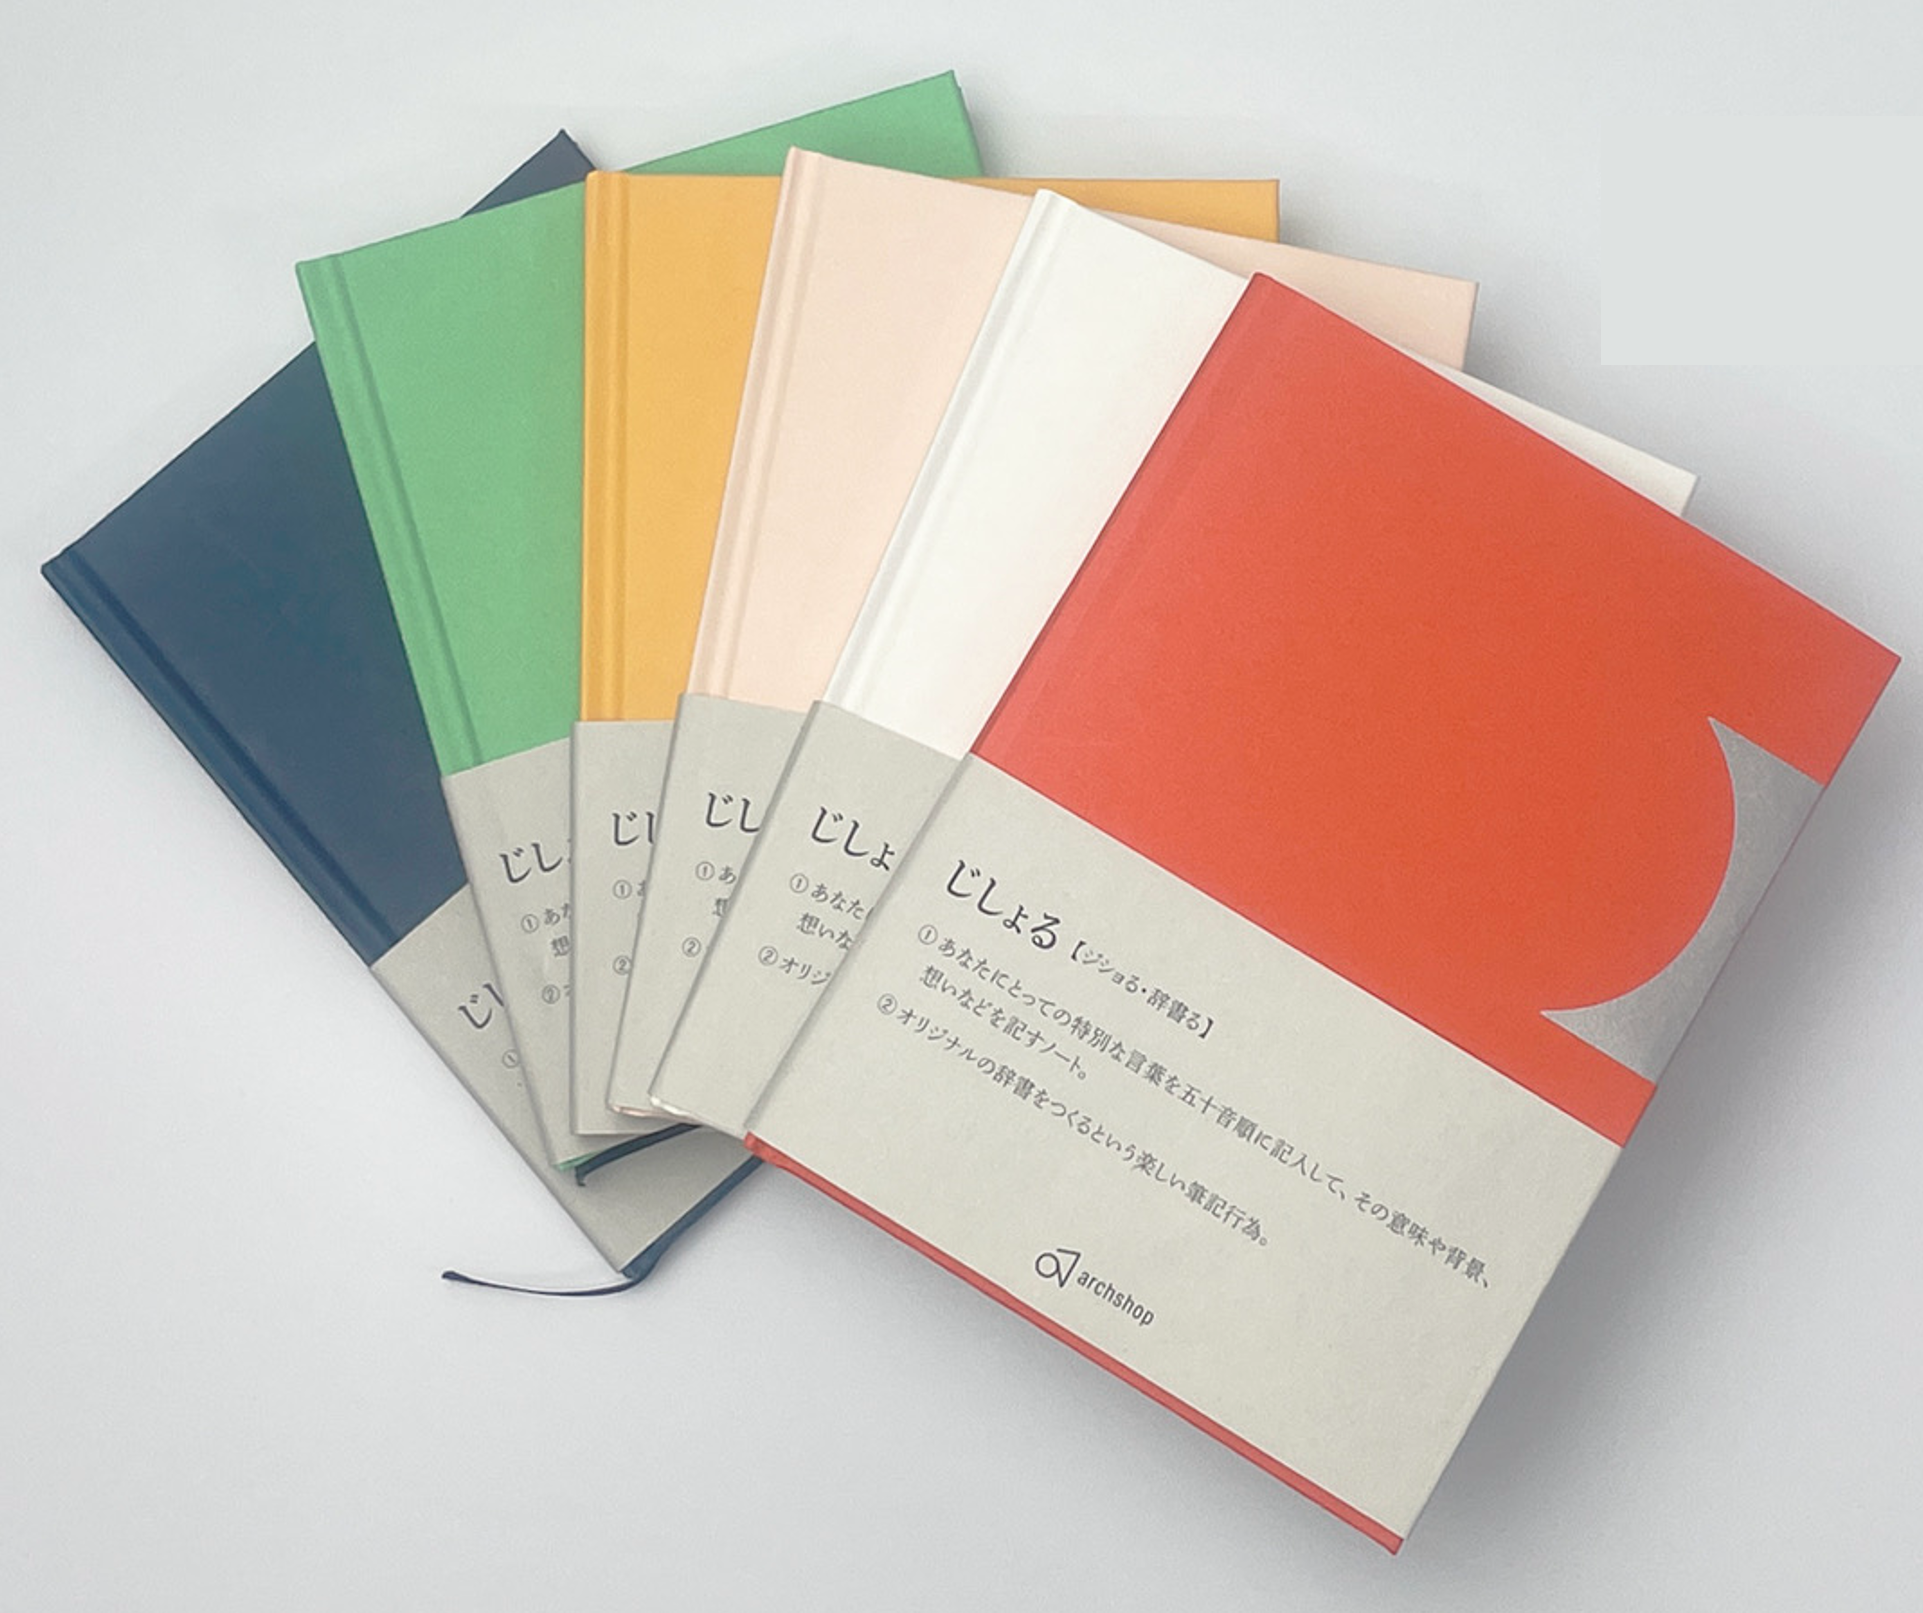 駒澤大学の学生と大阪書籍印刷株式会社が共同で開発した新たなノート「Jishoru」が販売開始―「あなたの好きが辞書になる」がコンセプト